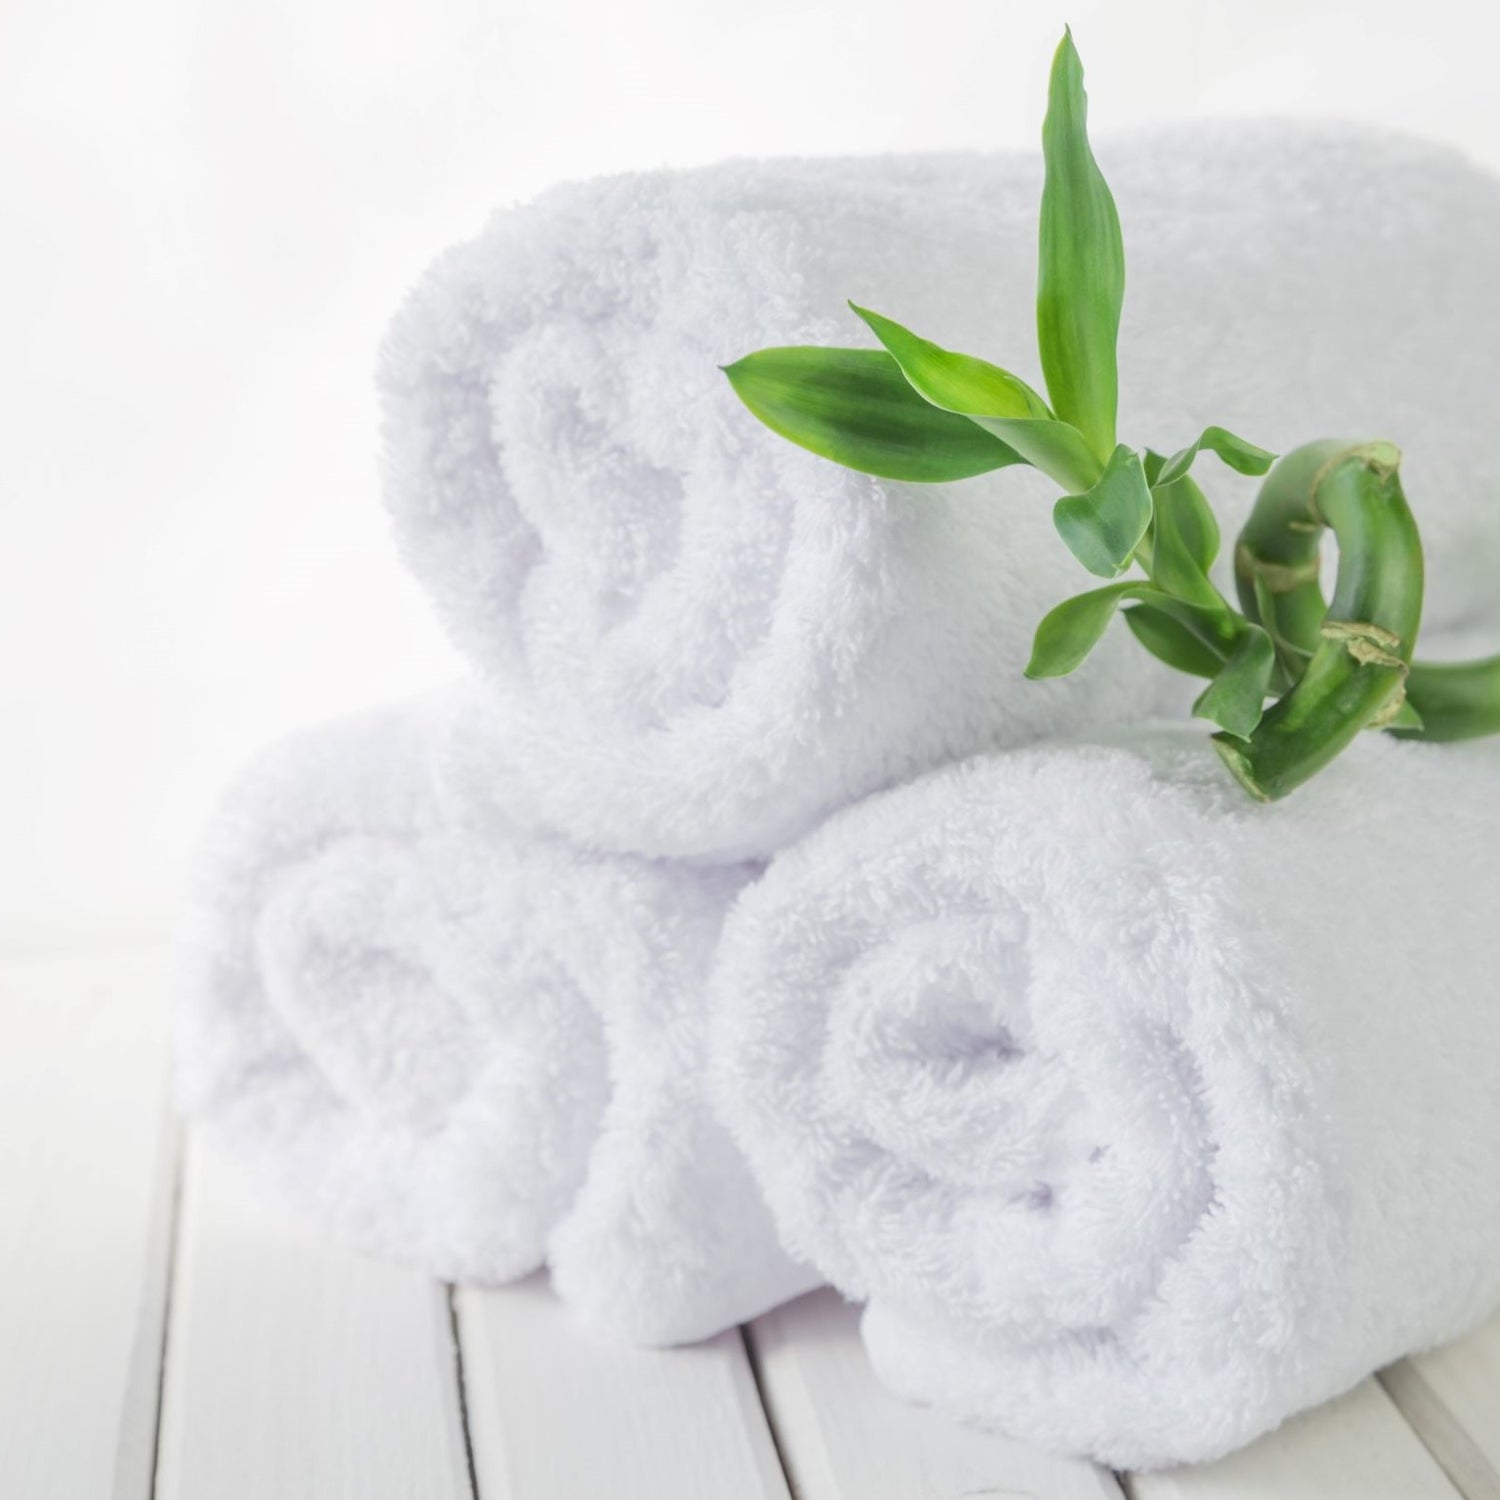 Are bamboo towels antibacterial?